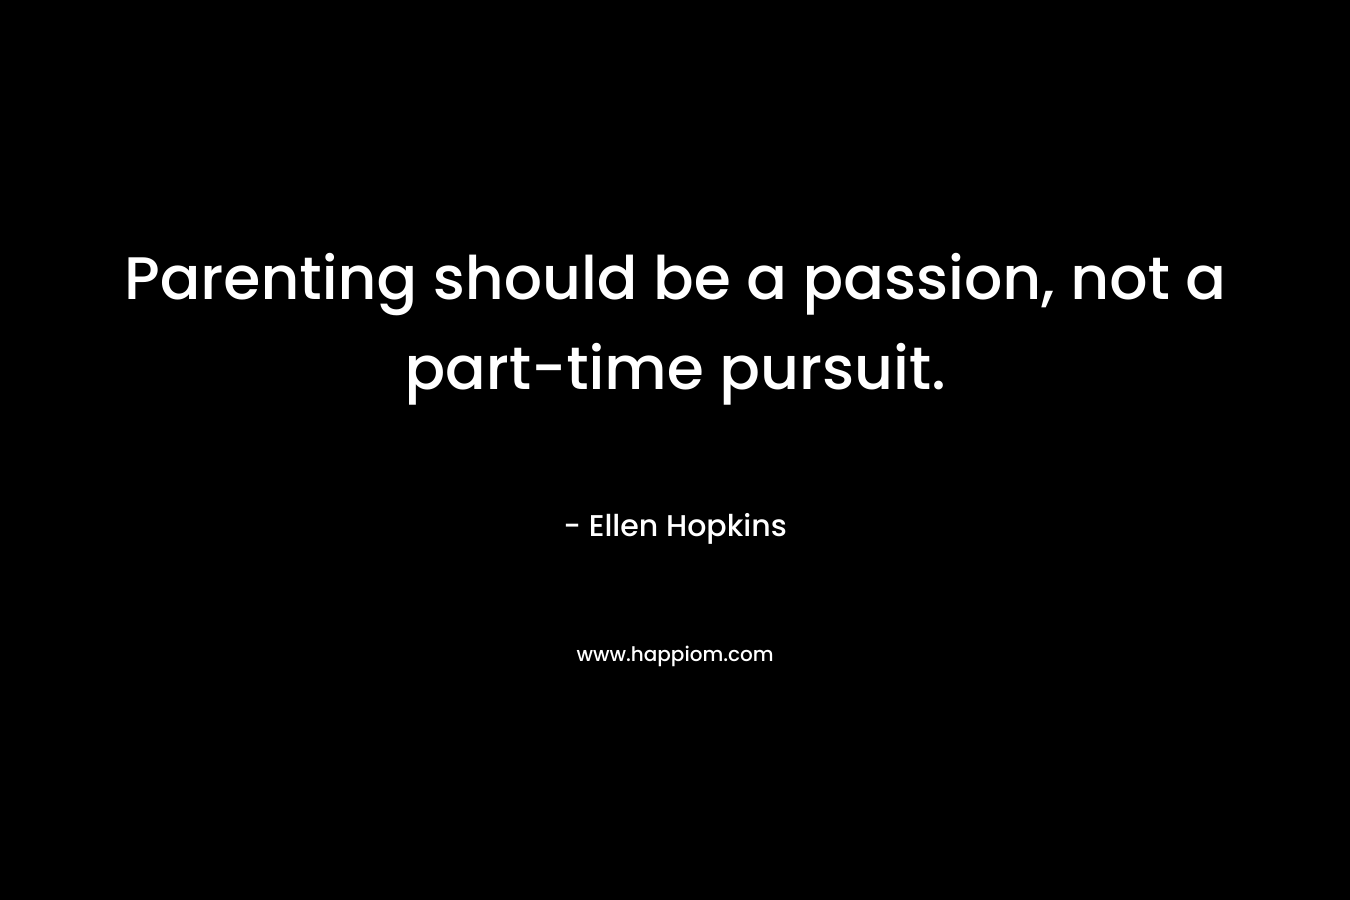 Parenting should be a passion, not a part-time pursuit.